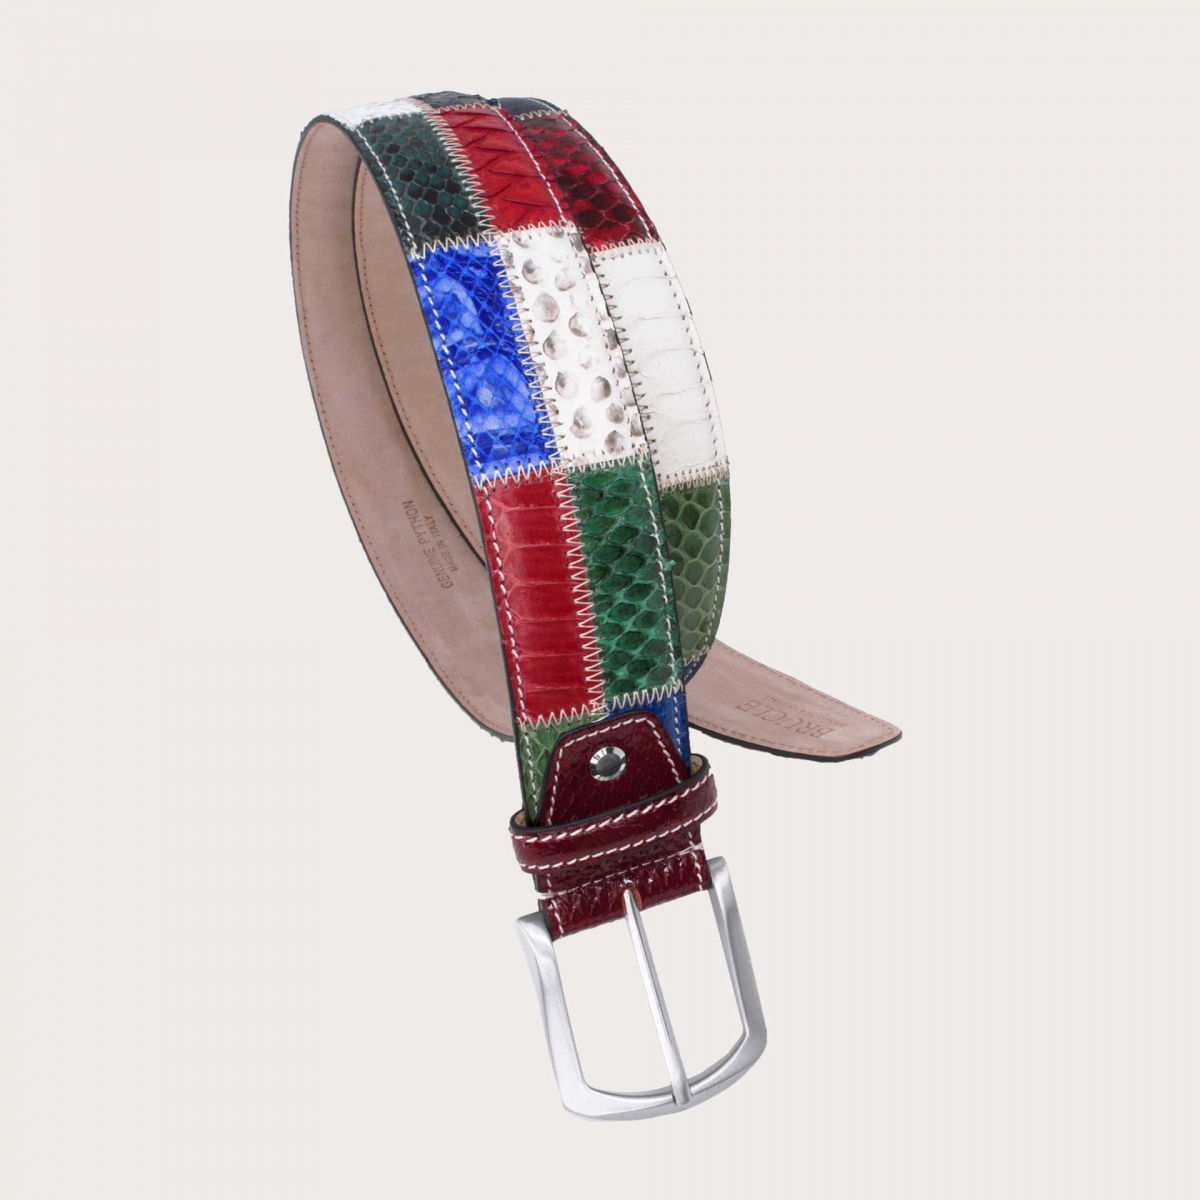 Cinturón casual patchwork en pitón, blanco, rojo, azul y verde